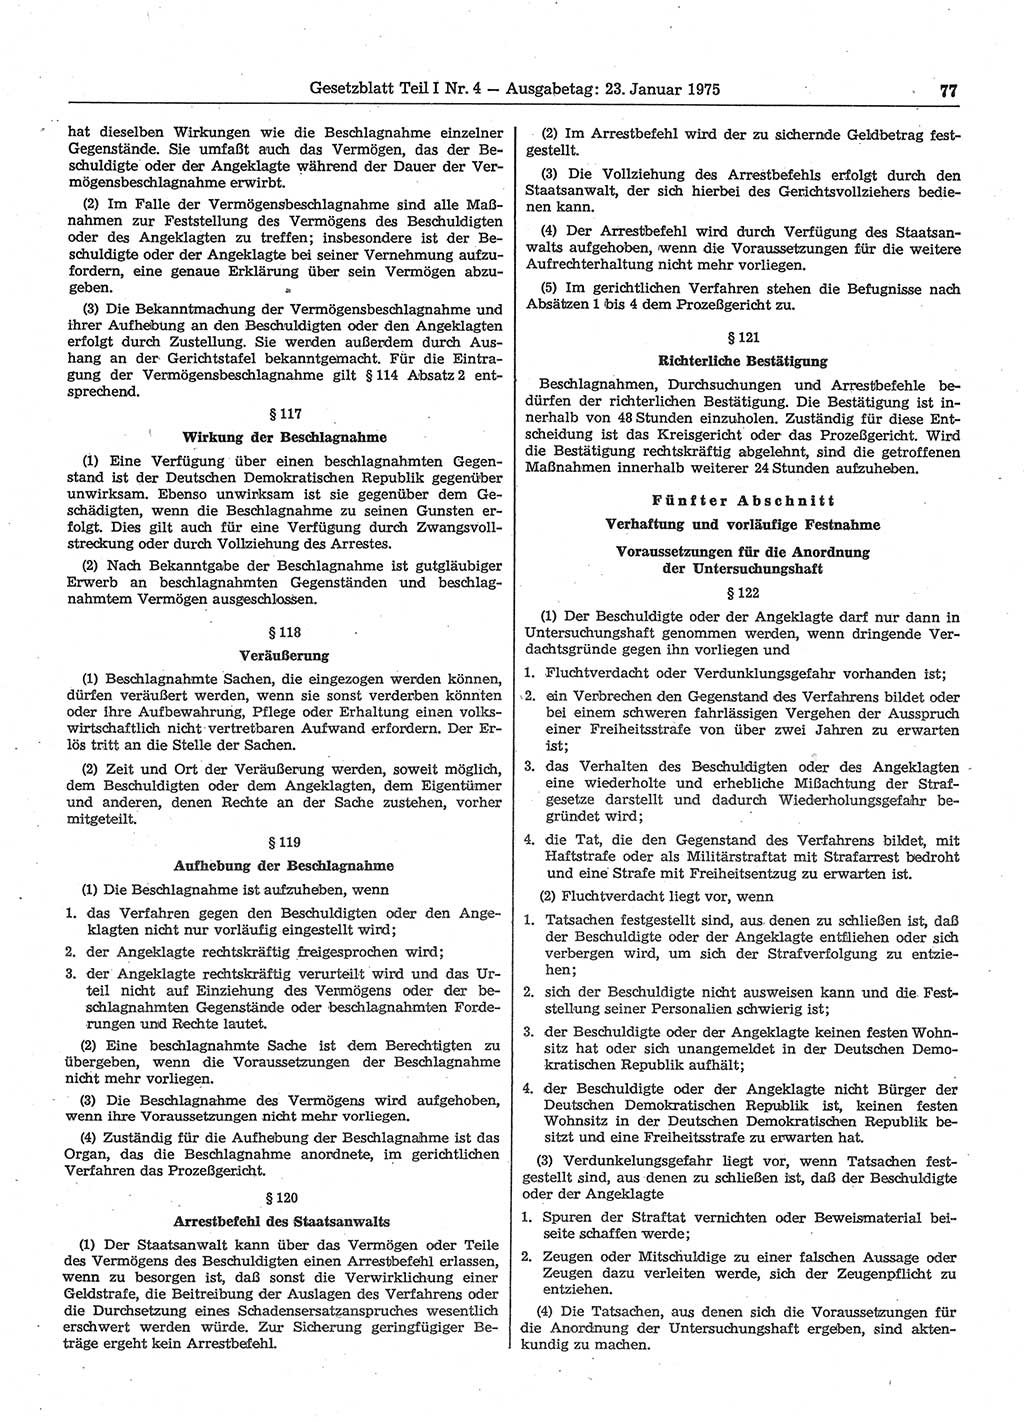 Gesetzblatt (GBl.) der Deutschen Demokratischen Republik (DDR) Teil Ⅰ 1975, Seite 77 (GBl. DDR Ⅰ 1975, S. 77)